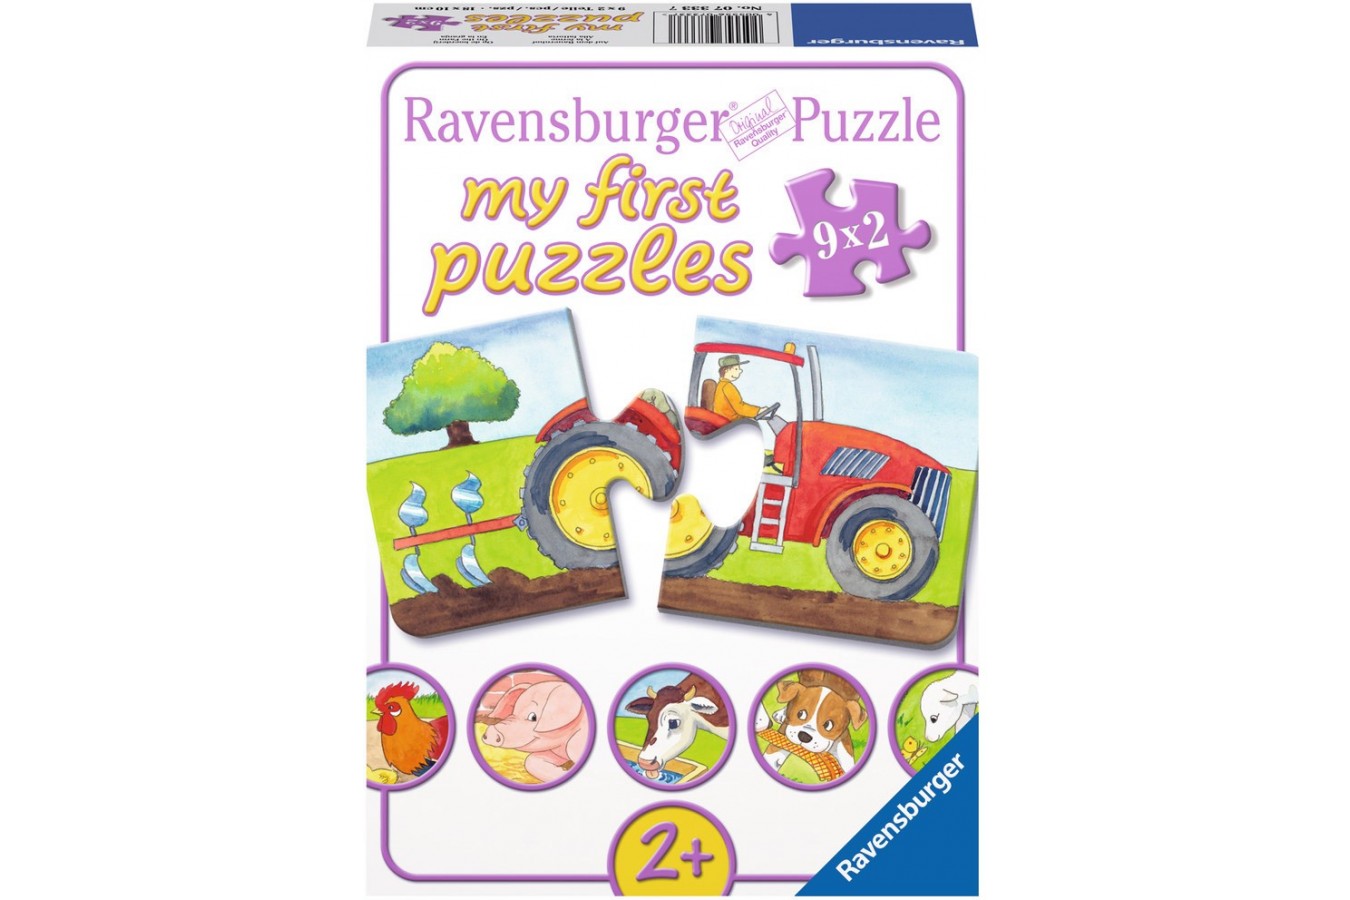 Puzzle Ravensburger - La Ferma, 9x2 piese (07333)